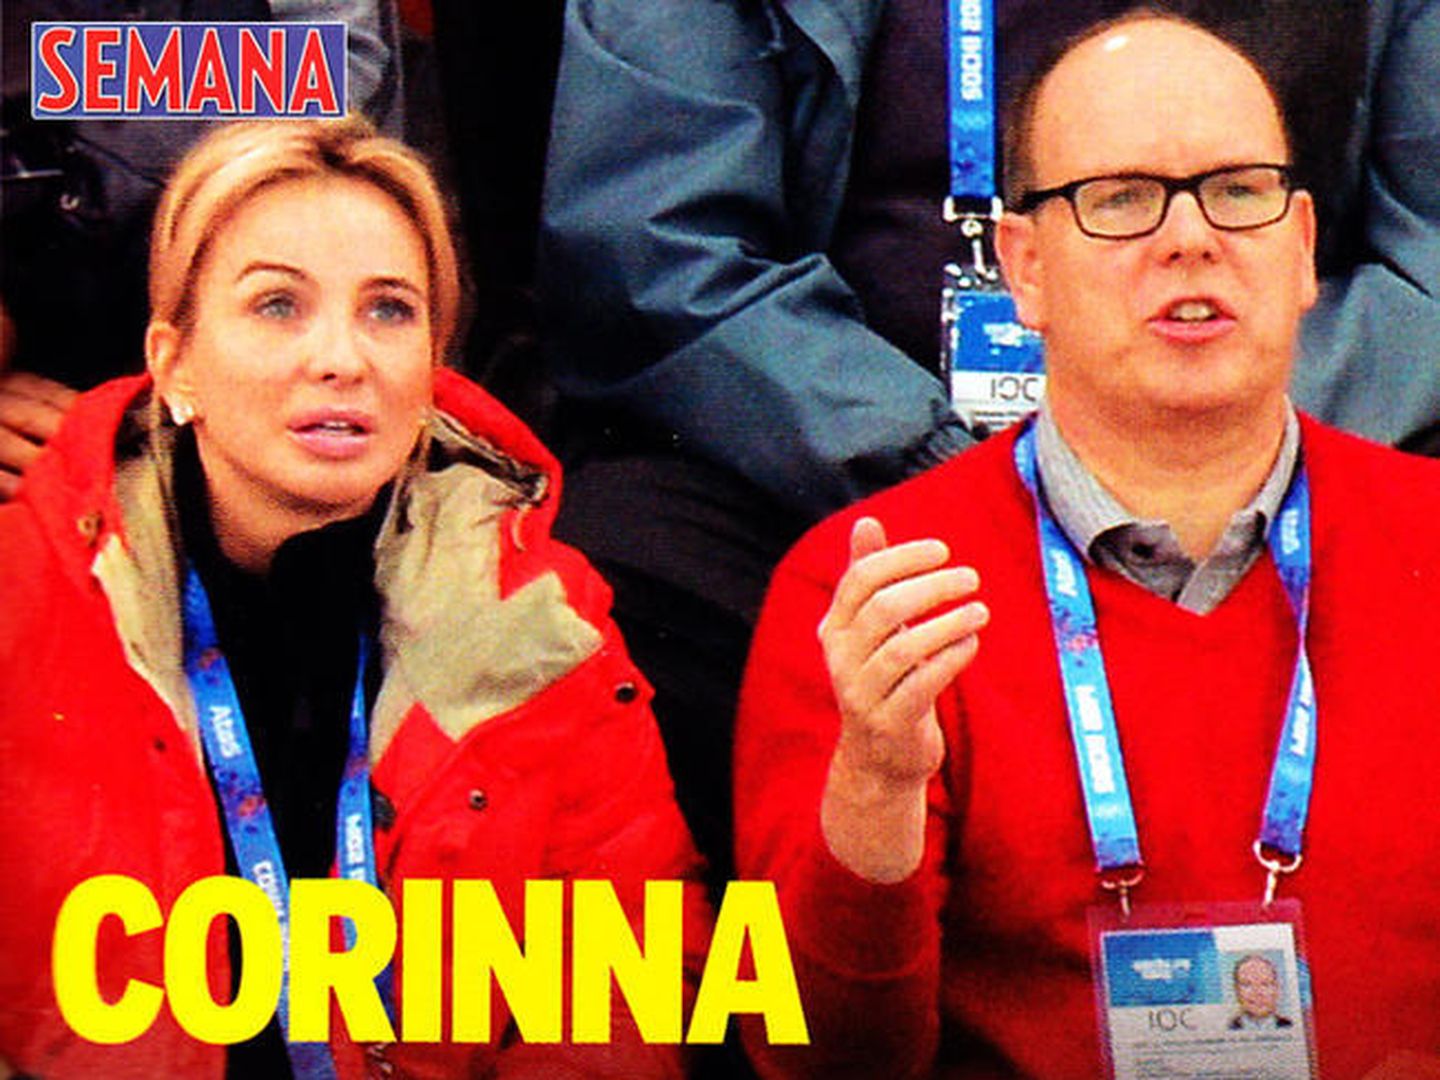 Corinna y Alberto de Mónaco en las Olimpiadas de Sochi (semana)